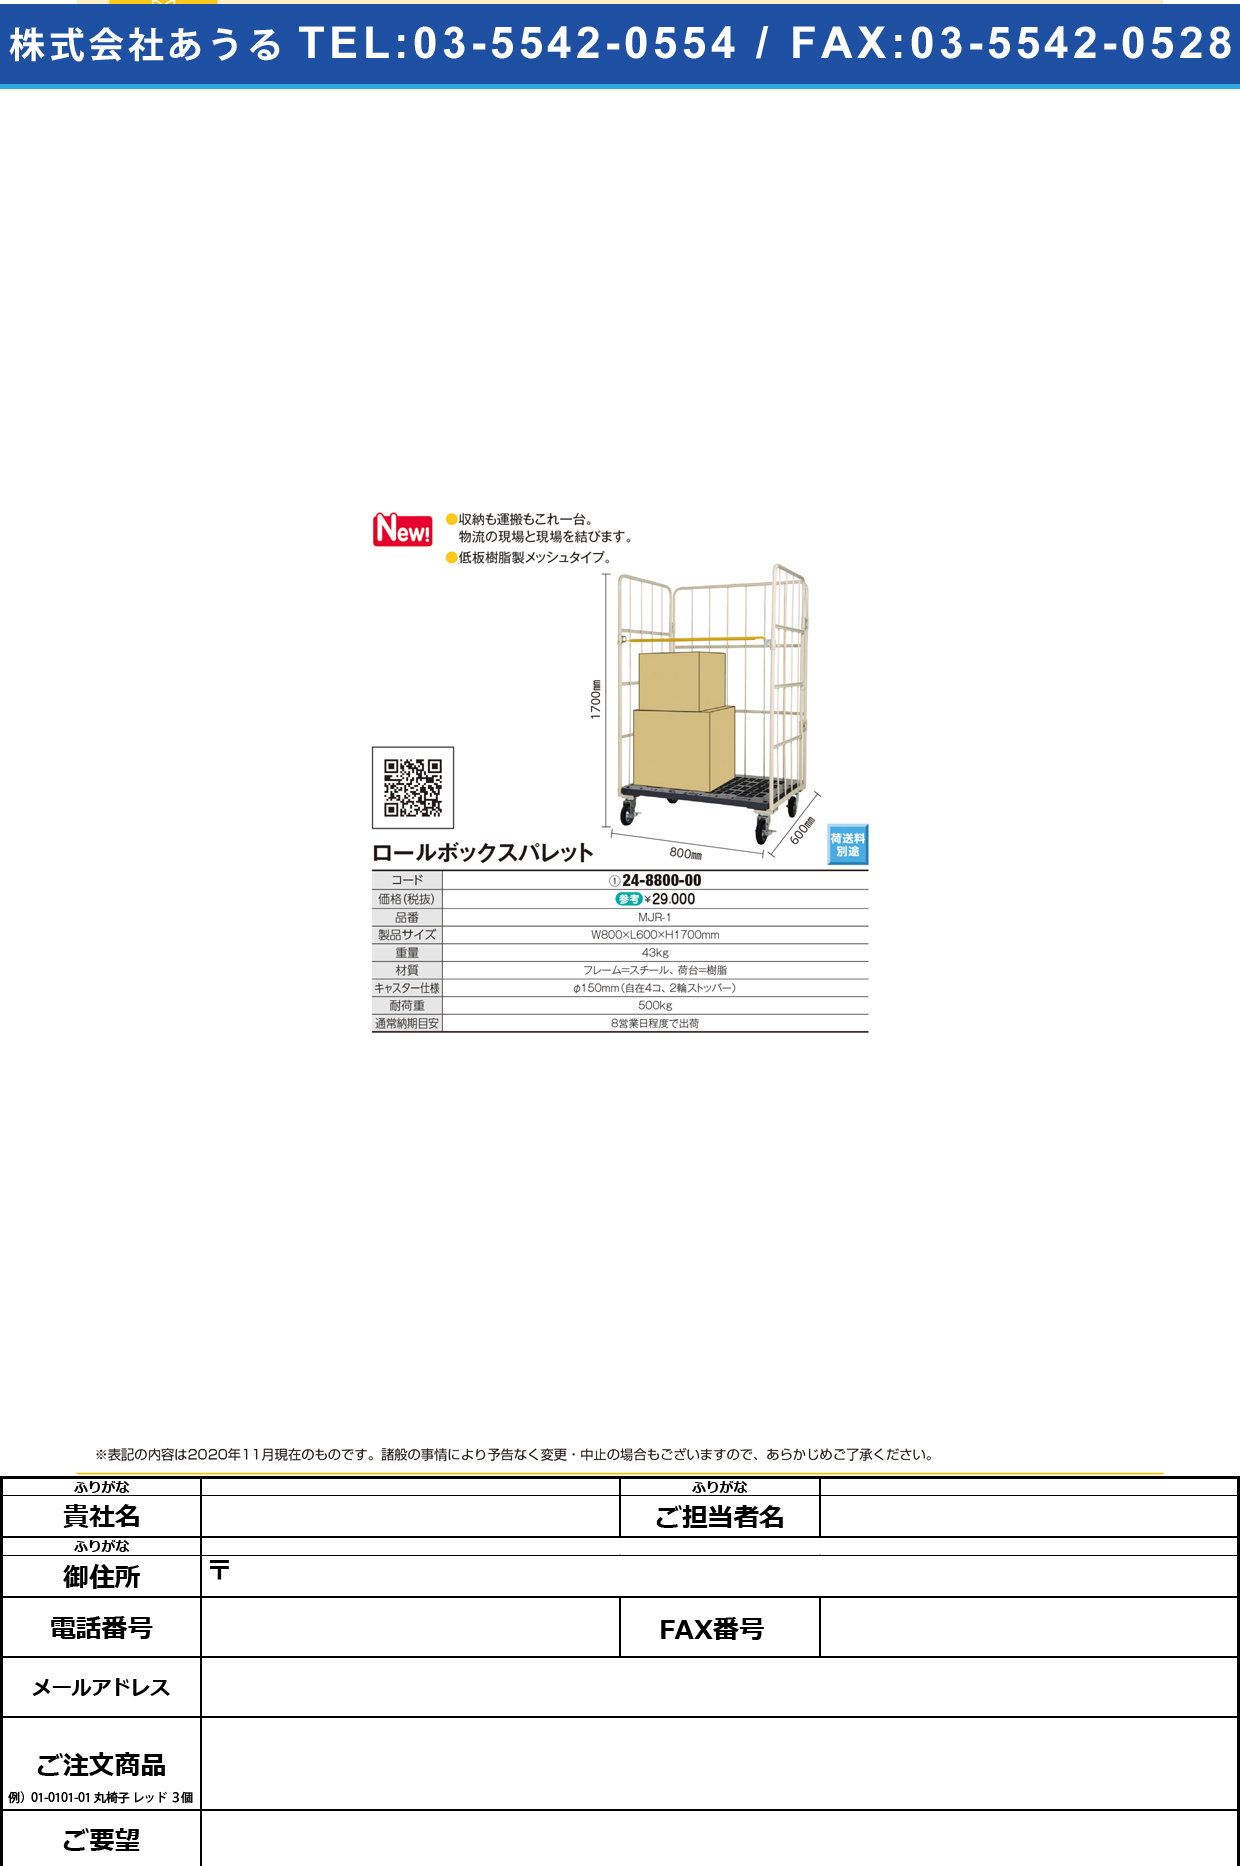 ロールボックスパレット MJR-1MJR-1(24-8800-00)【マキテック】(販売単位:1)